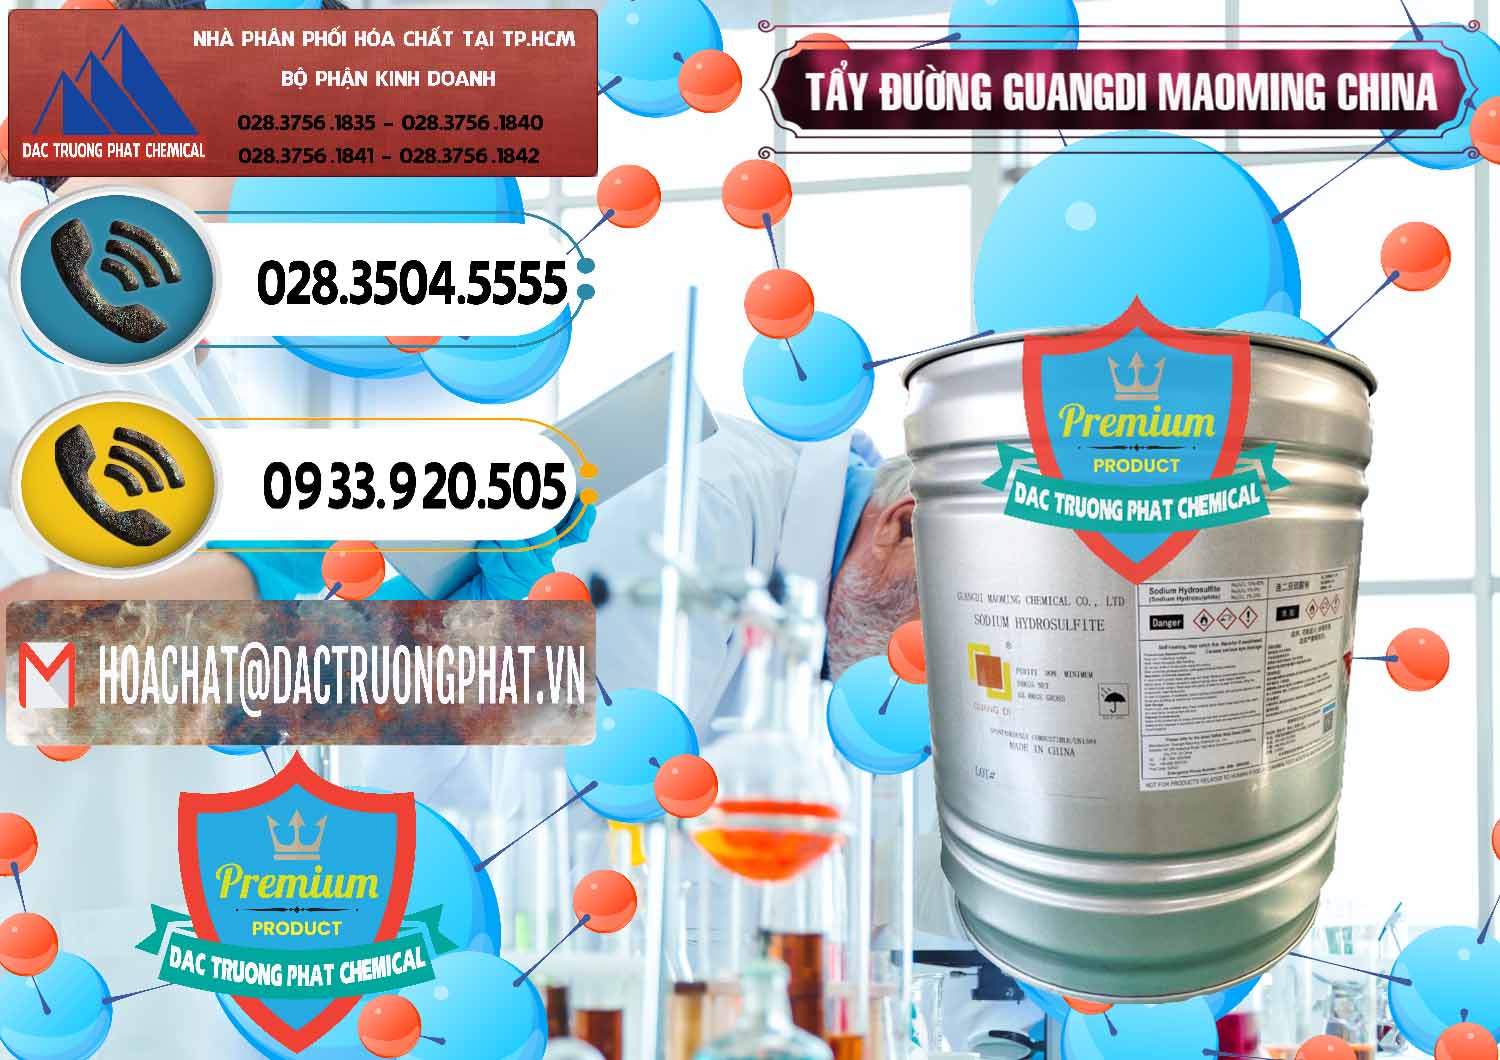 Nơi chuyên cung cấp & bán Tẩy Đường - NA2S2O4 Guangdi Maoming Thùng Xám Trung Quốc China - 0402 - Đơn vị chuyên phân phối và nhập khẩu hóa chất tại TP.HCM - hoachatdetnhuom.vn